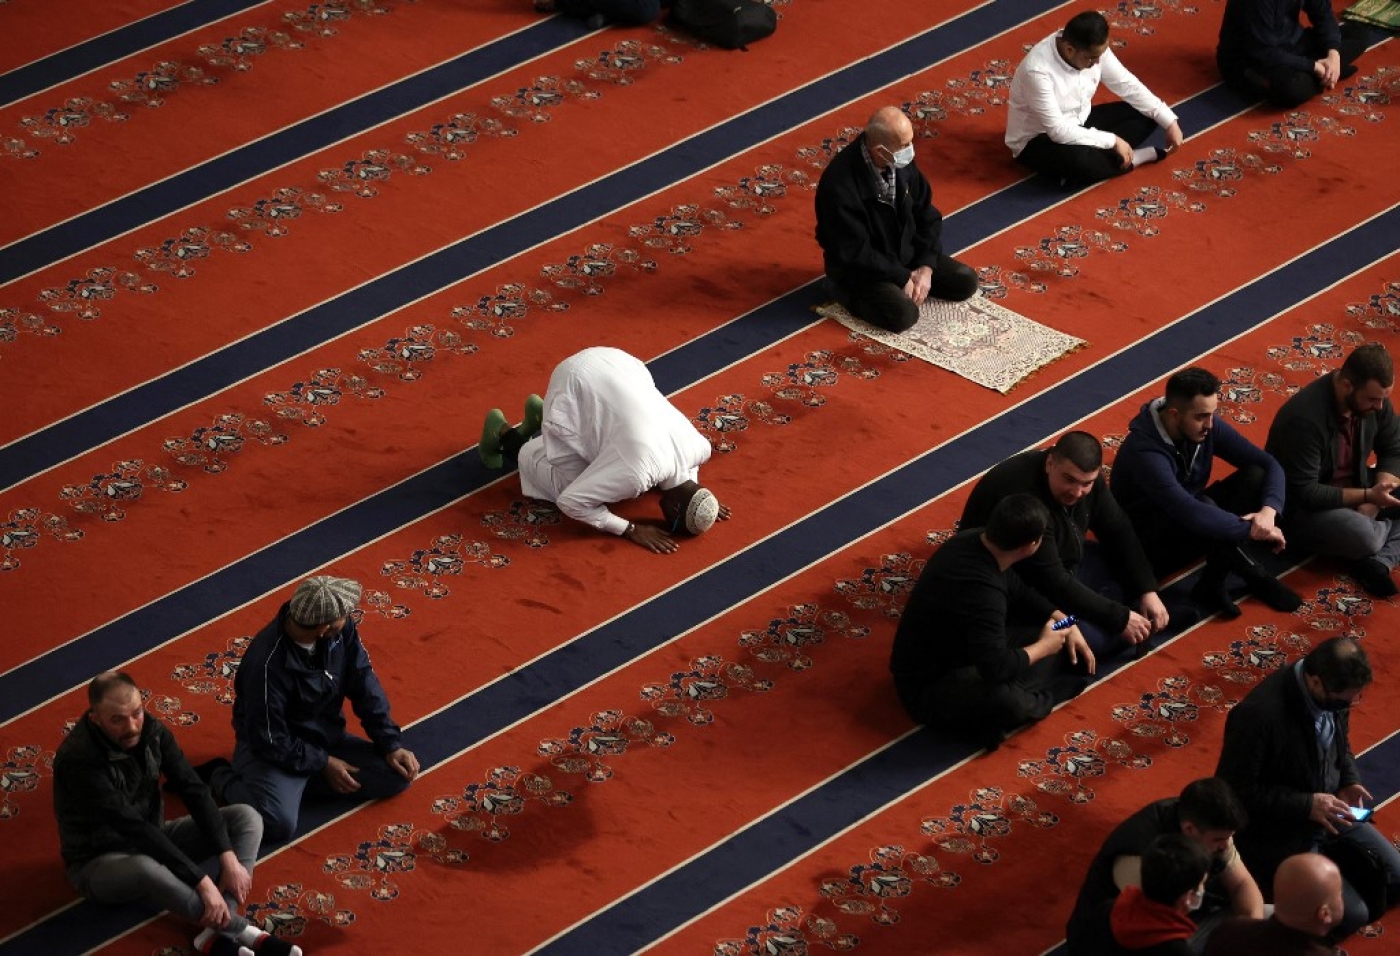 « Notre rappel de la laïcité ne veut pas dire que nous ne sommes pas croyants. La laïcité protège aussi les musulmans », explique l’avocat de la compagnie de transport (AFP/Adem Altan)